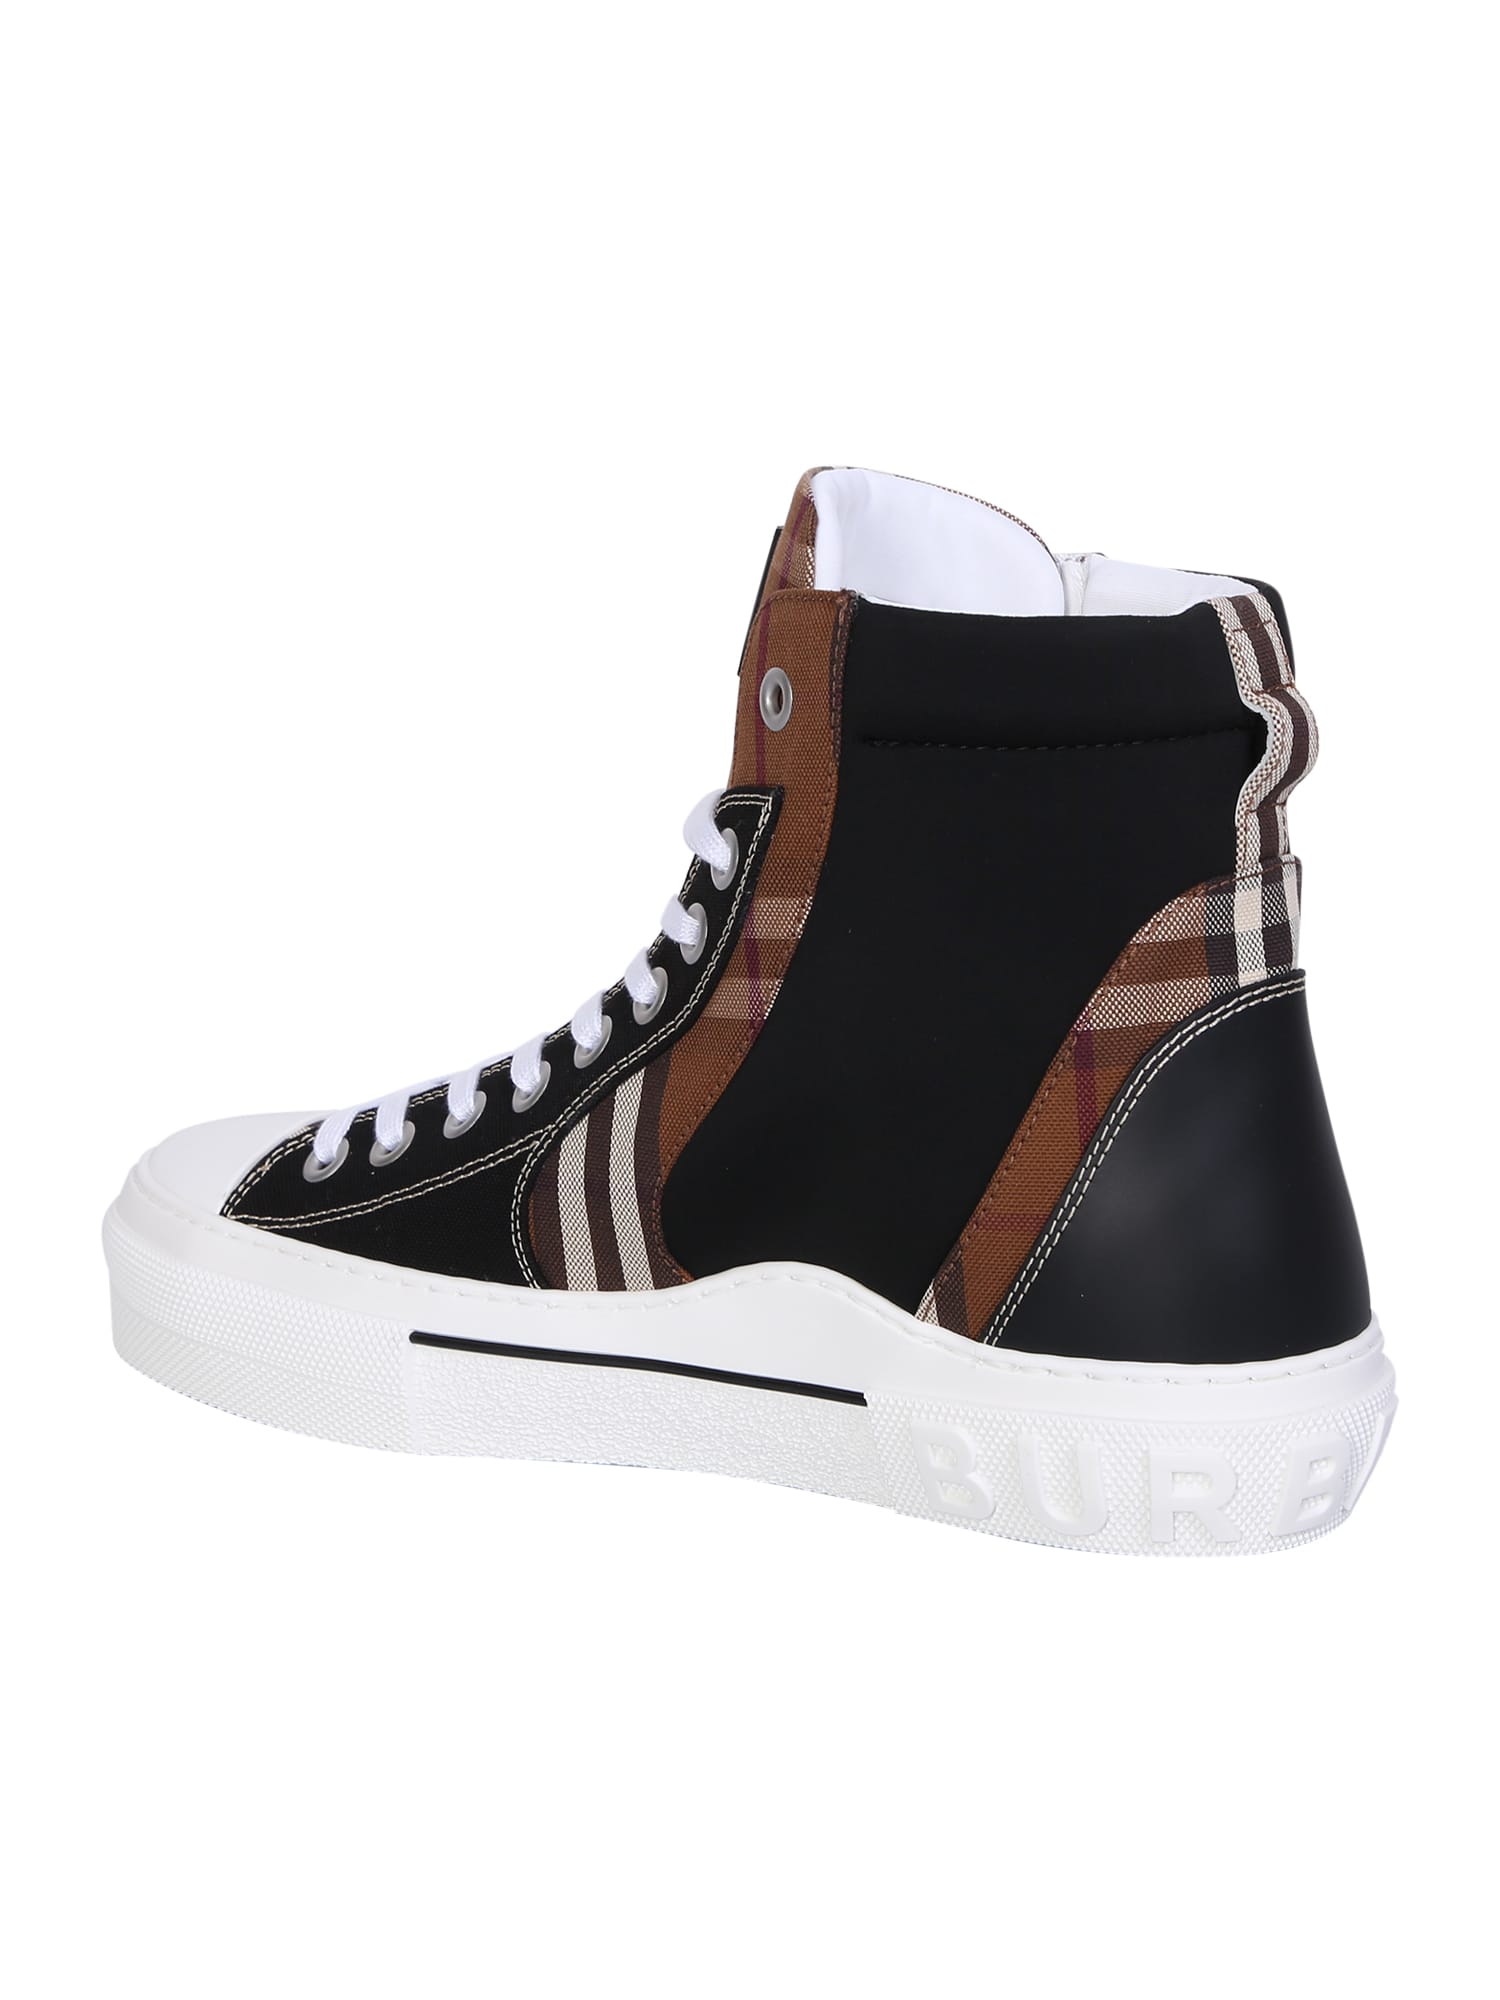 Burberry Sneakers Men 8064282 Fabric Brown Birch 552€